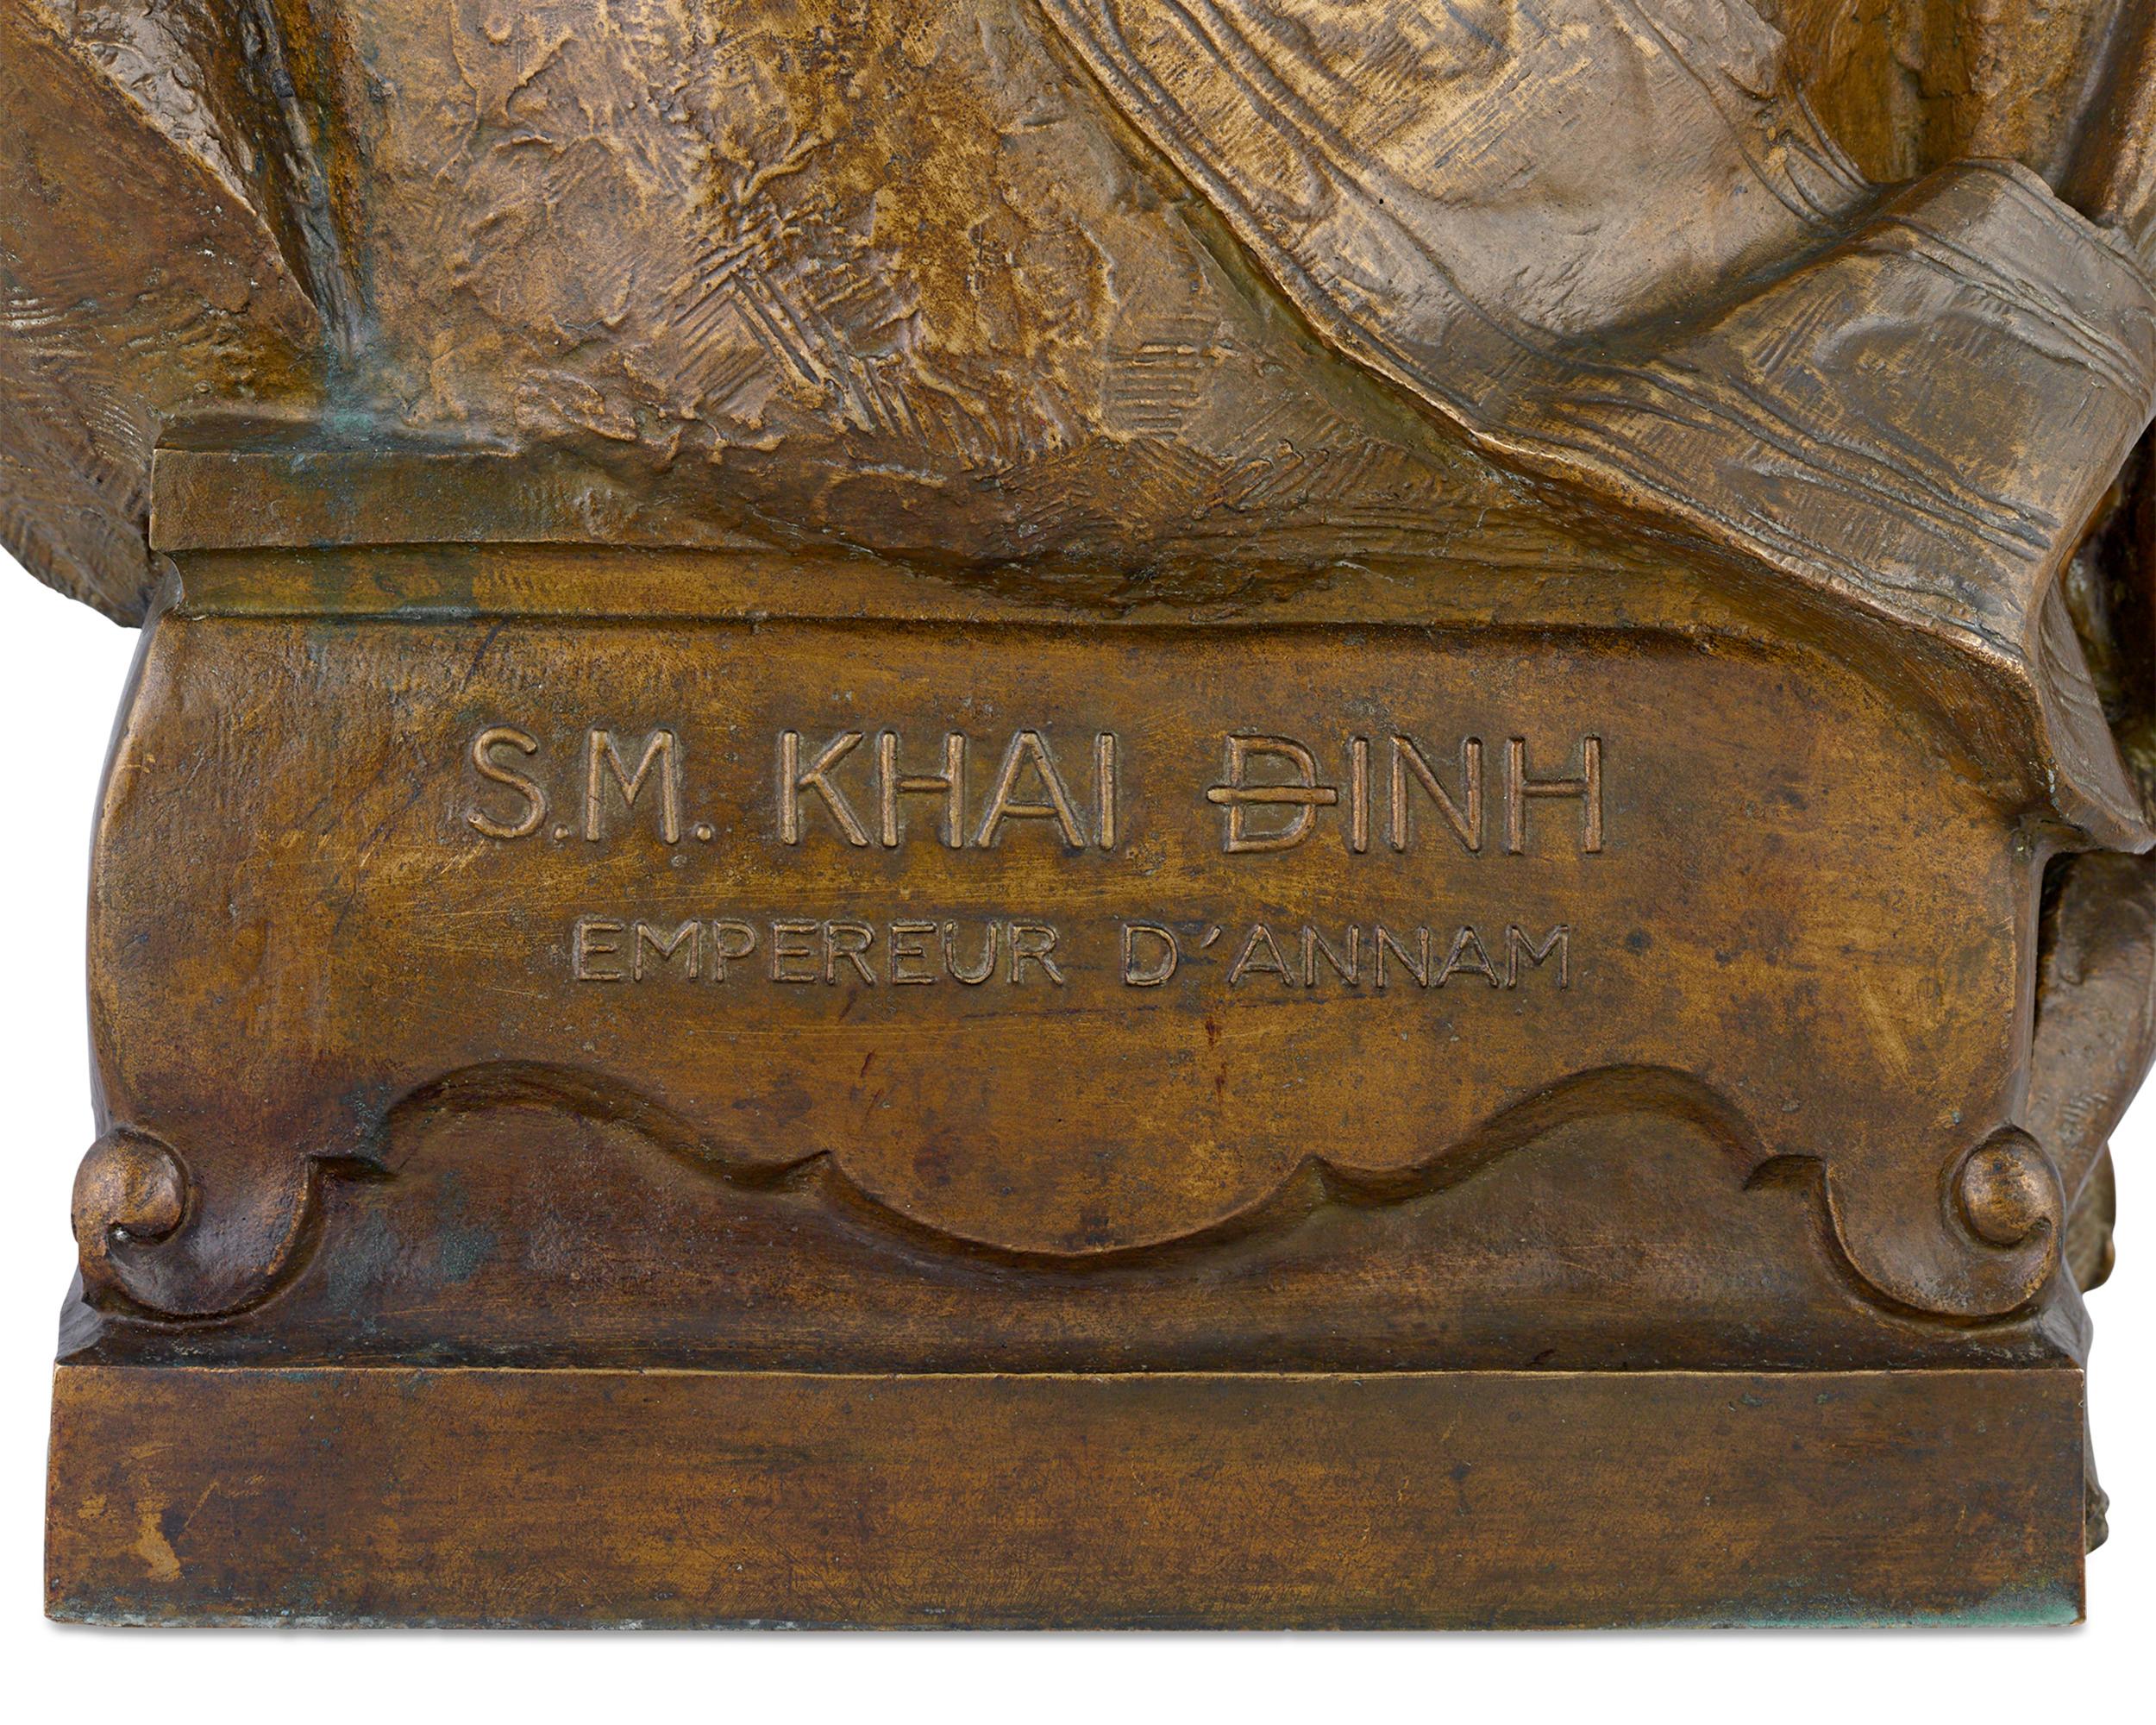 S.M Khai Dinh, Empereur d'Annam (S.M. Khai Dinh, Emperor of Annam)  - Other Art Style Sculpture by Paul Ducuing